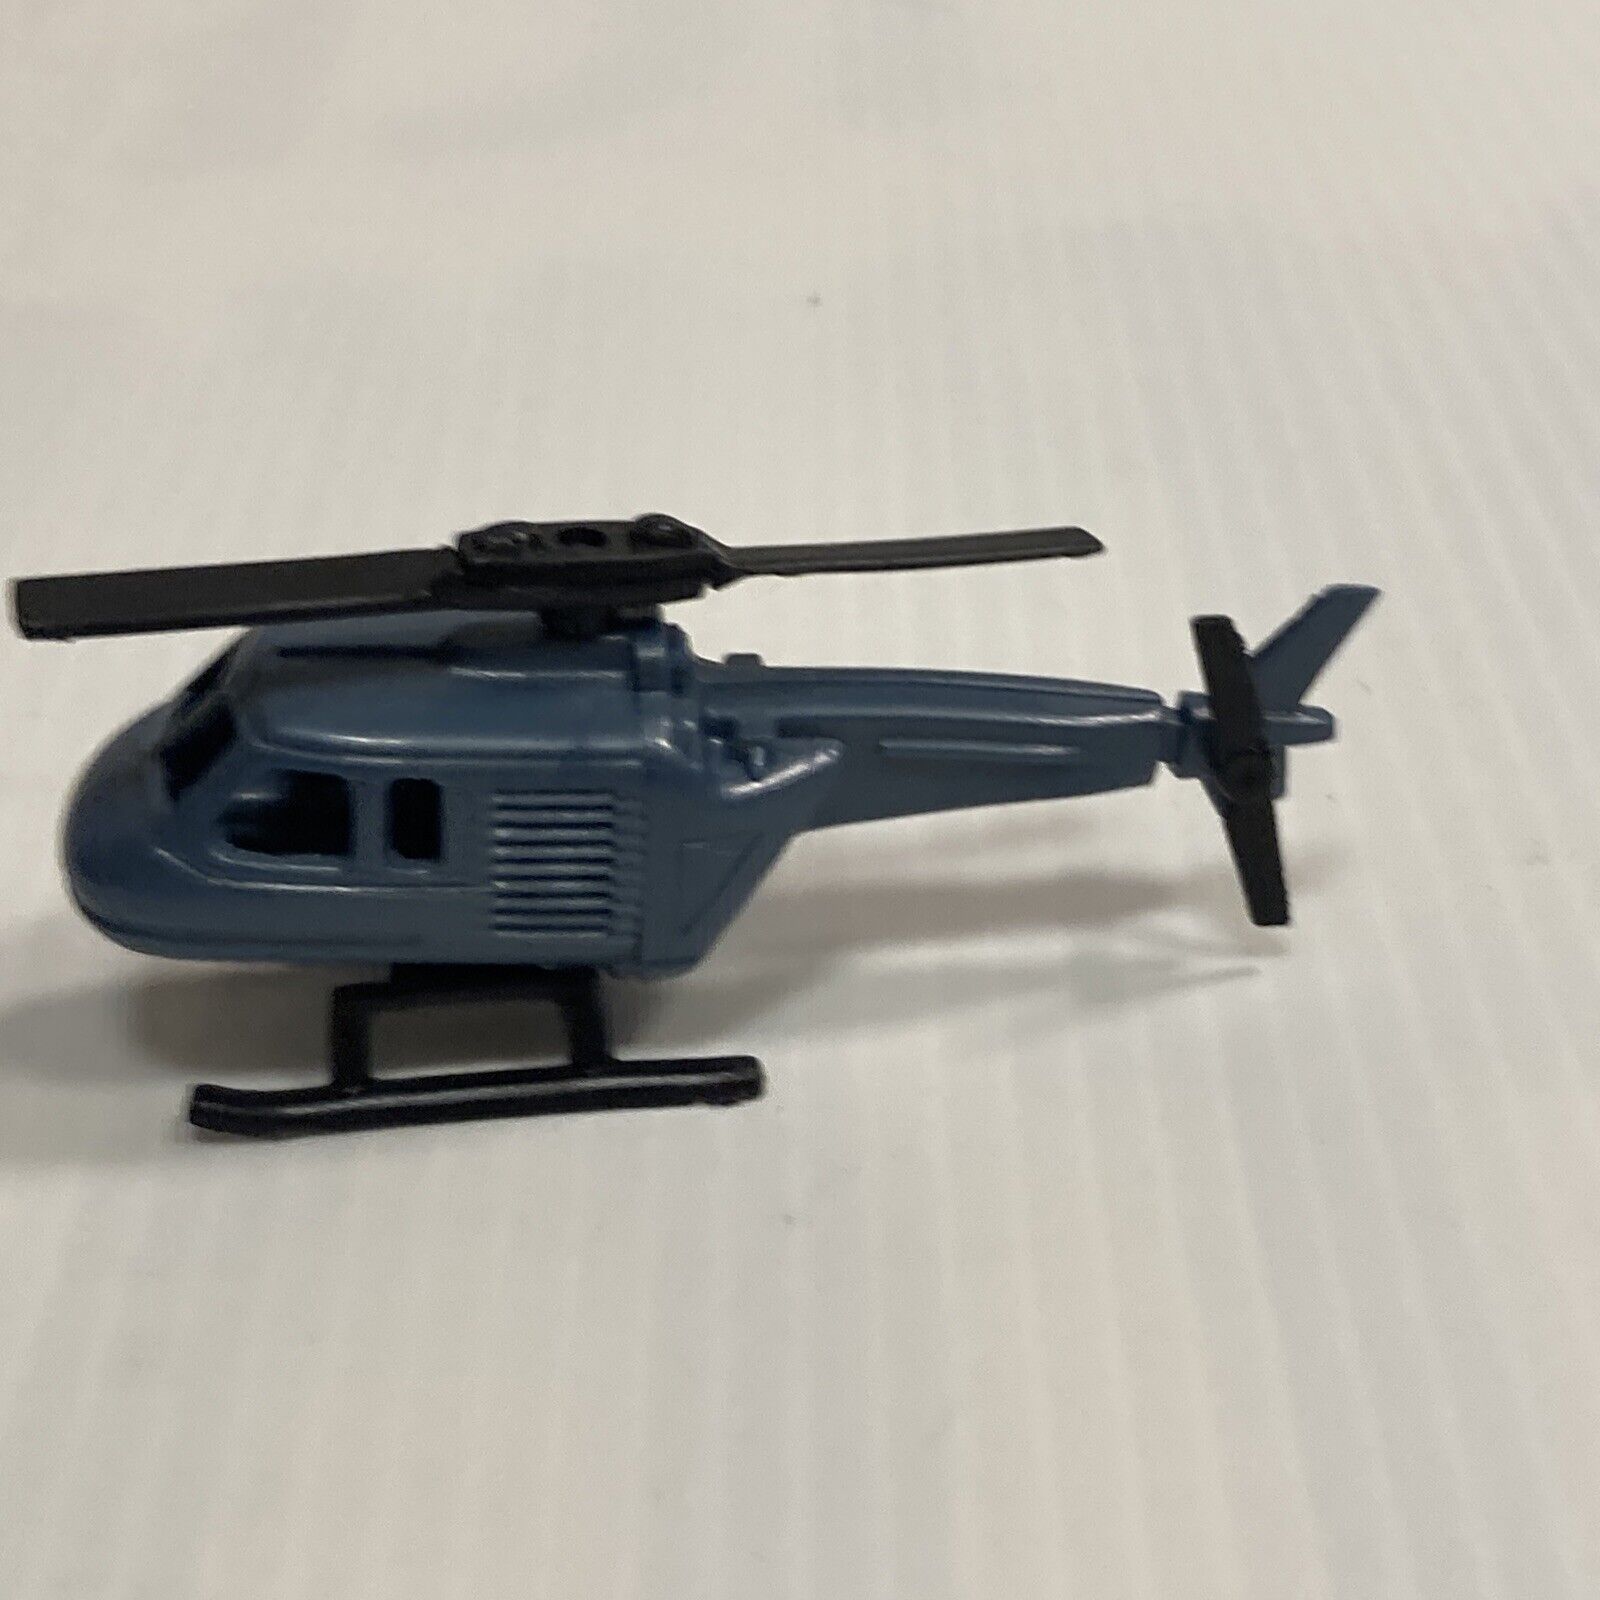 Kinder Antique Mountable Helikopter Giodi 1990 - Helicopter K91 N°68 Grey Blue